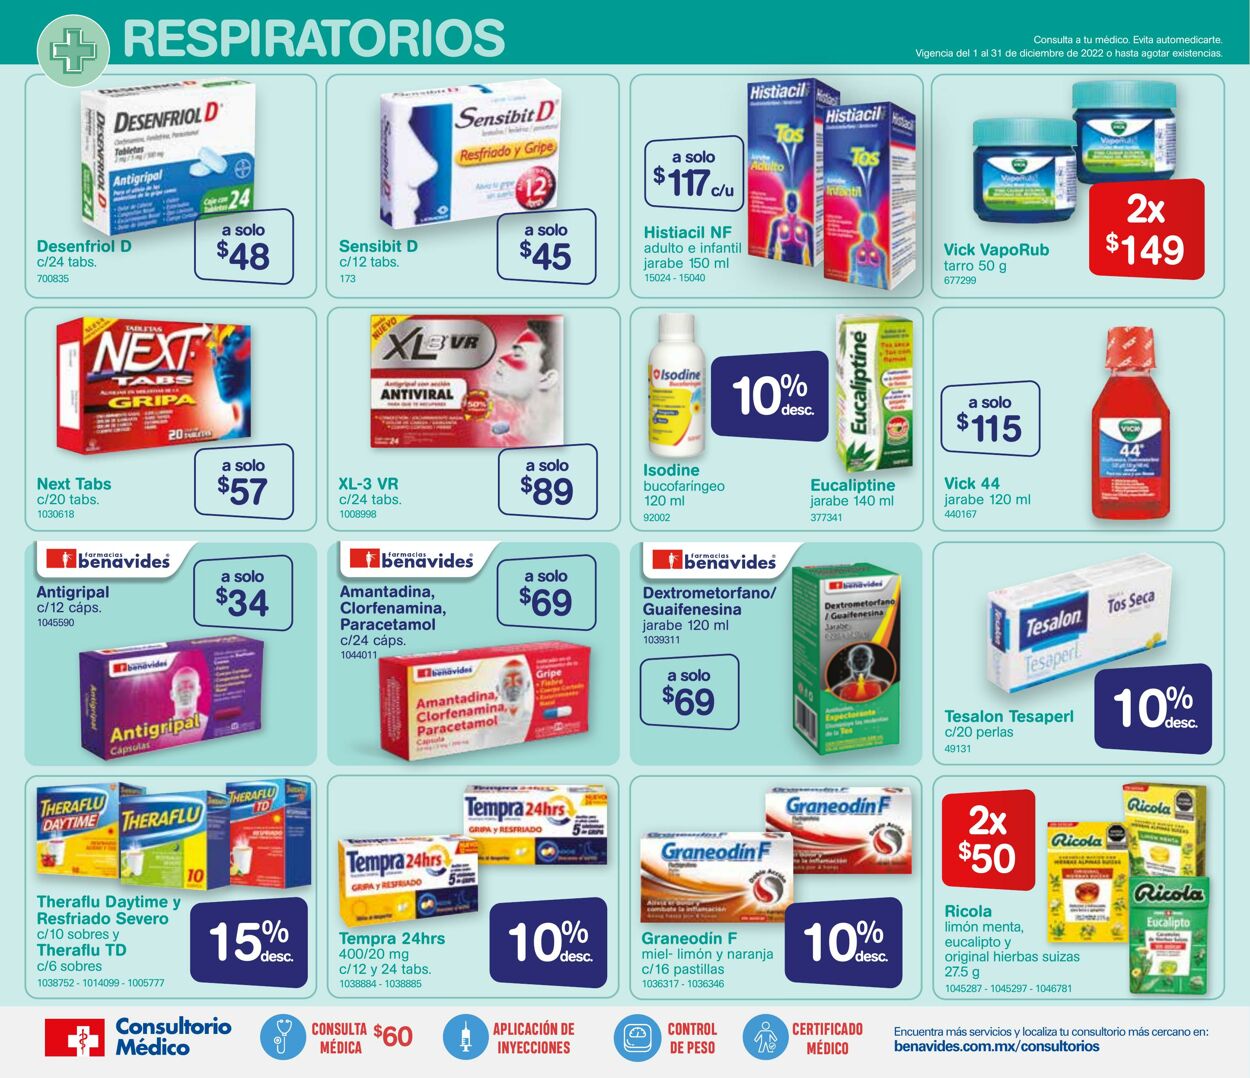 Catálogo Farmacia Benavides 01.12.2022 - 31.12.2022